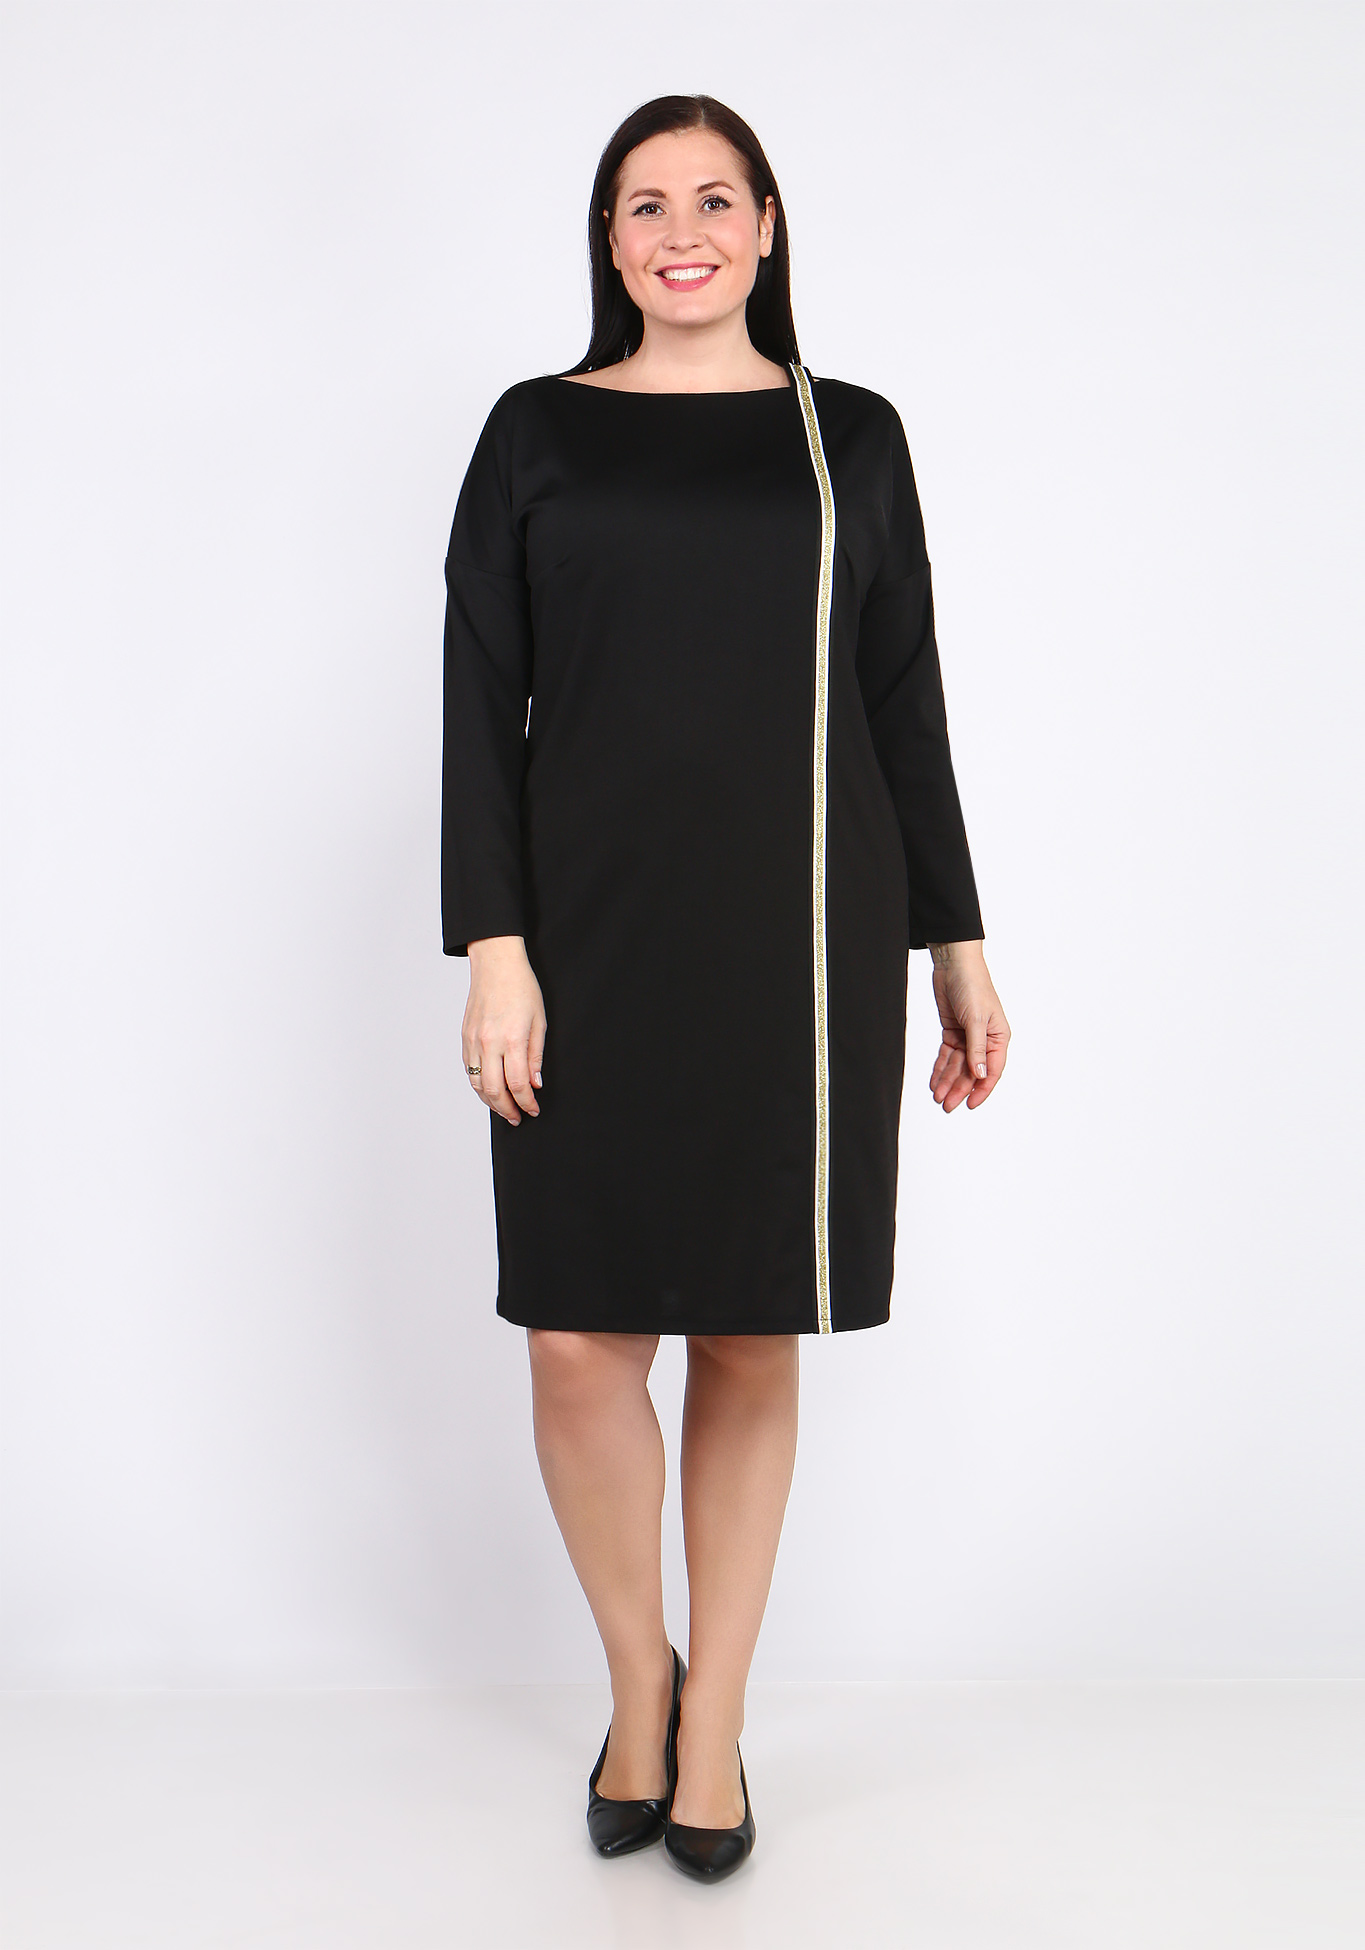 Платье с лампасом Bianka Modeno, размер 48, цвет чёрный - фото 2